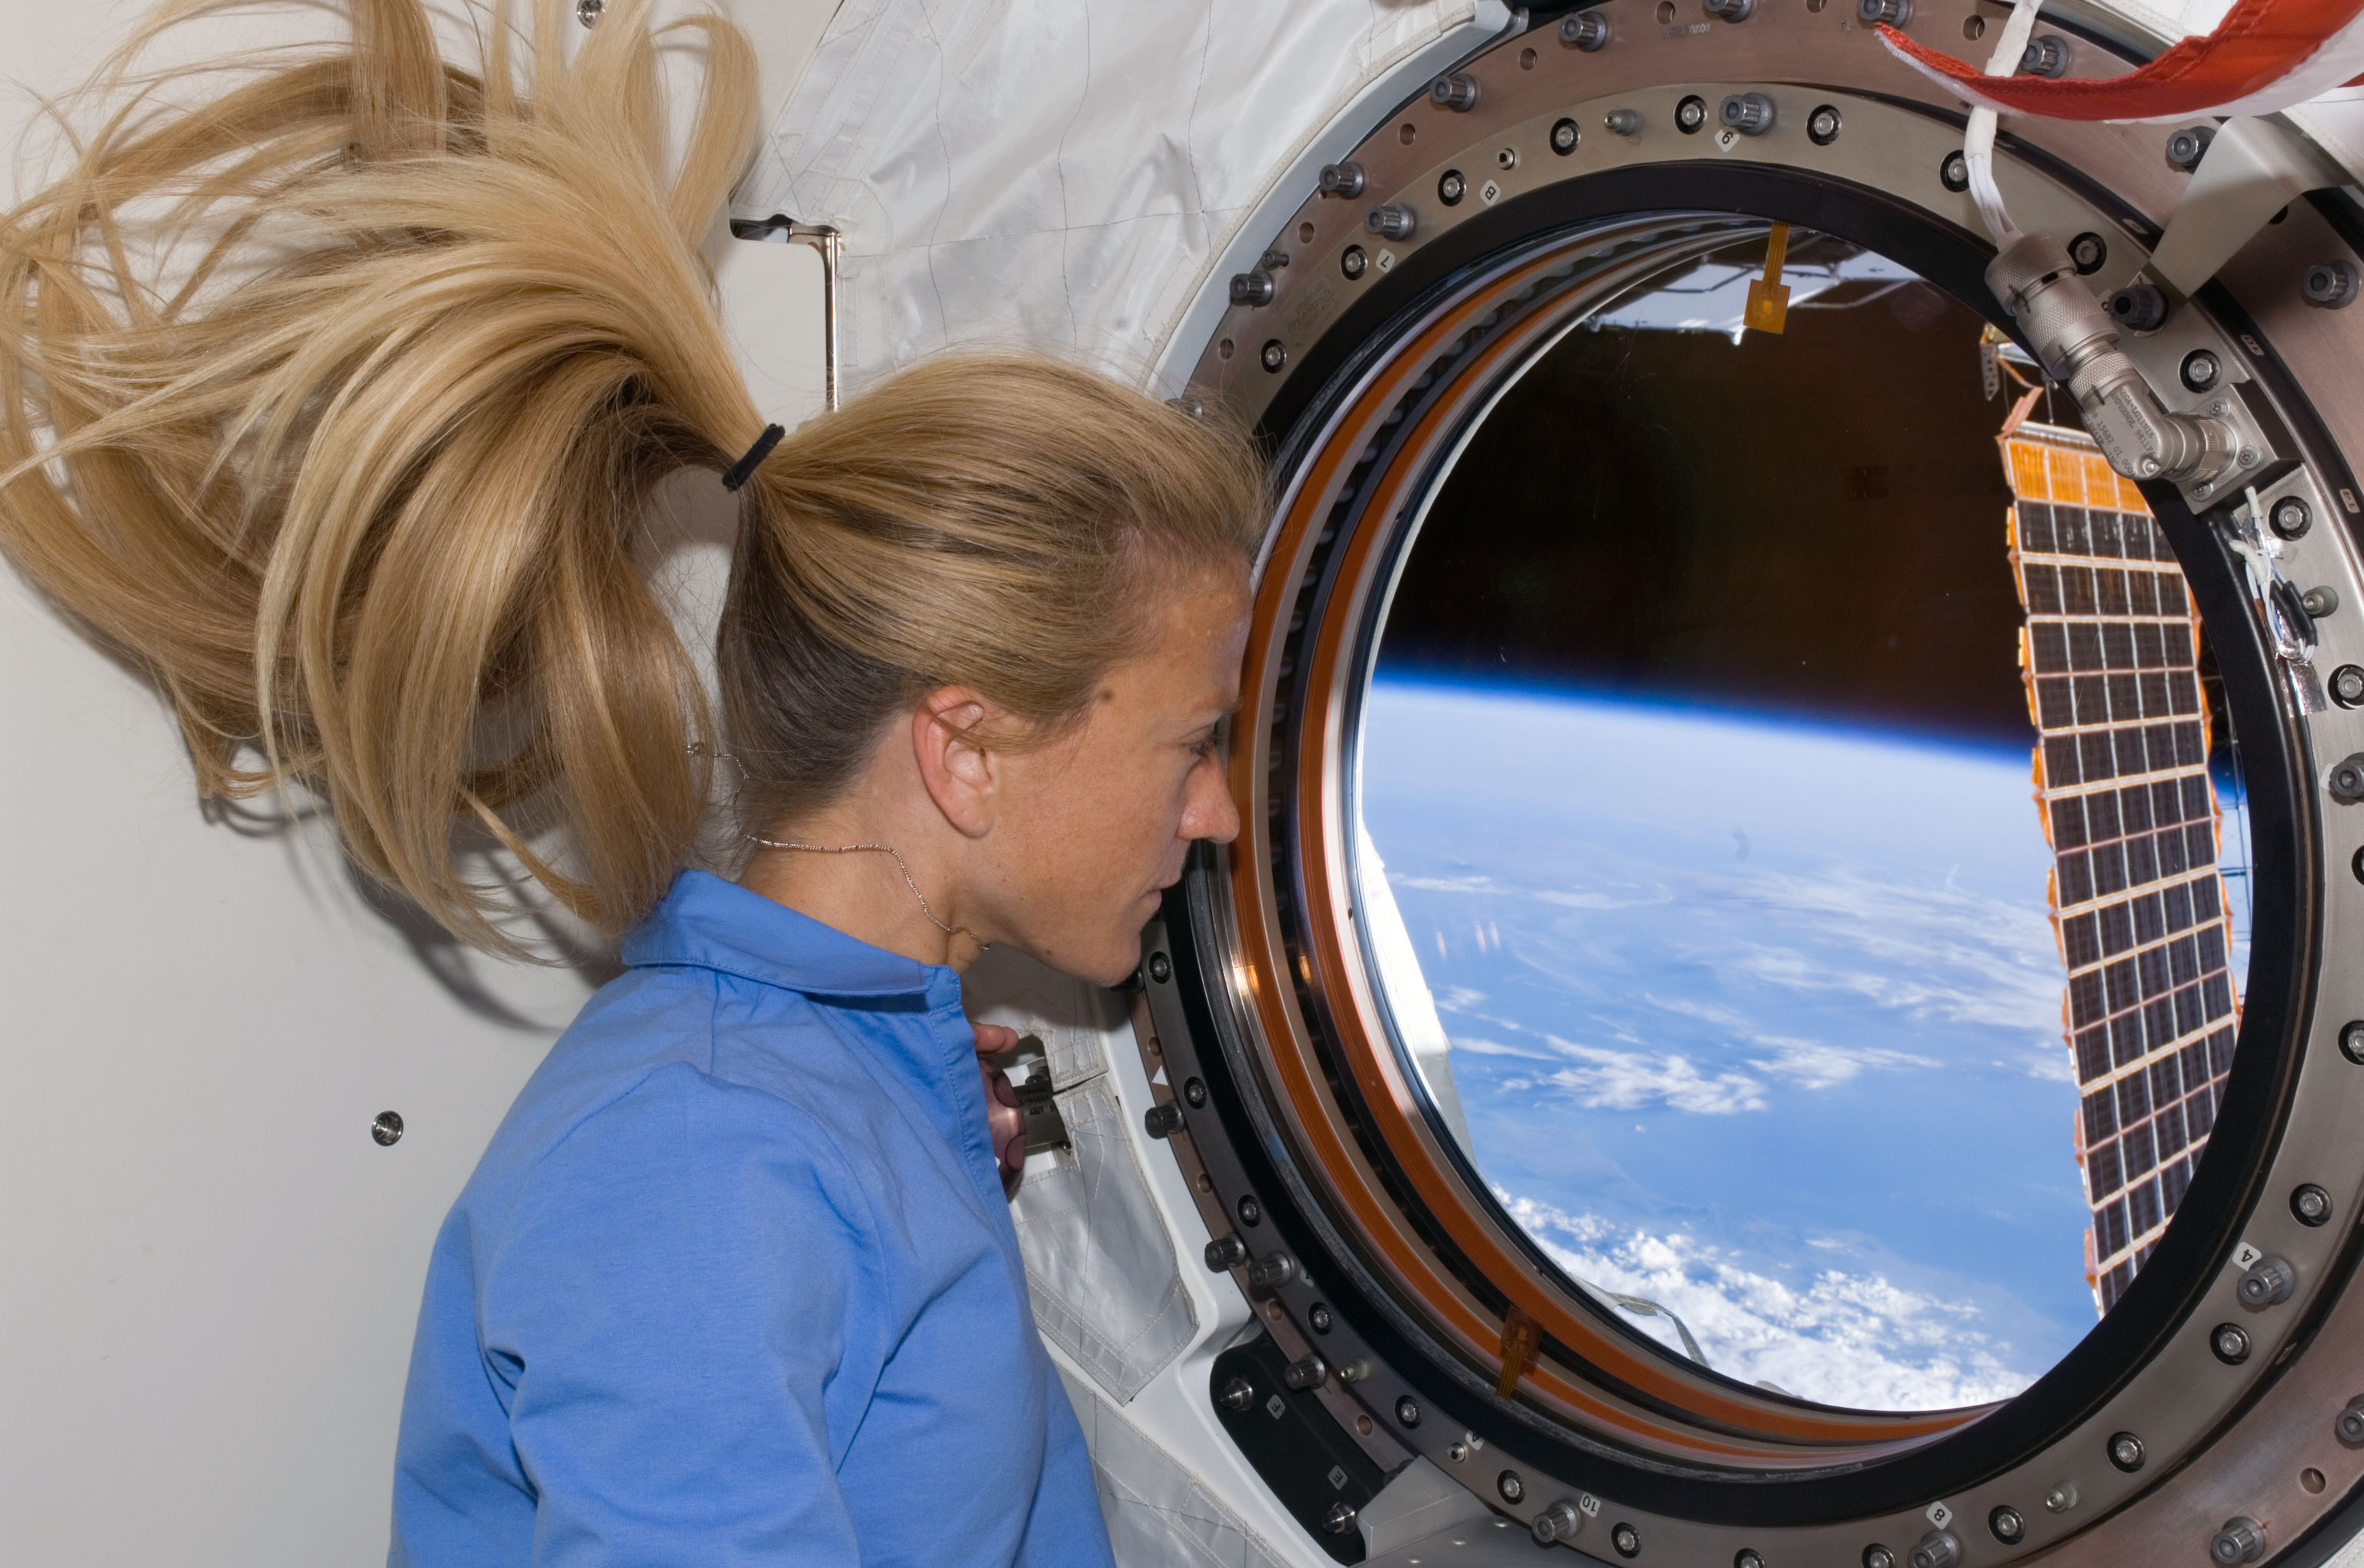 5 حقائق عن الدورة الشهرية للنساء في "الفضاء"